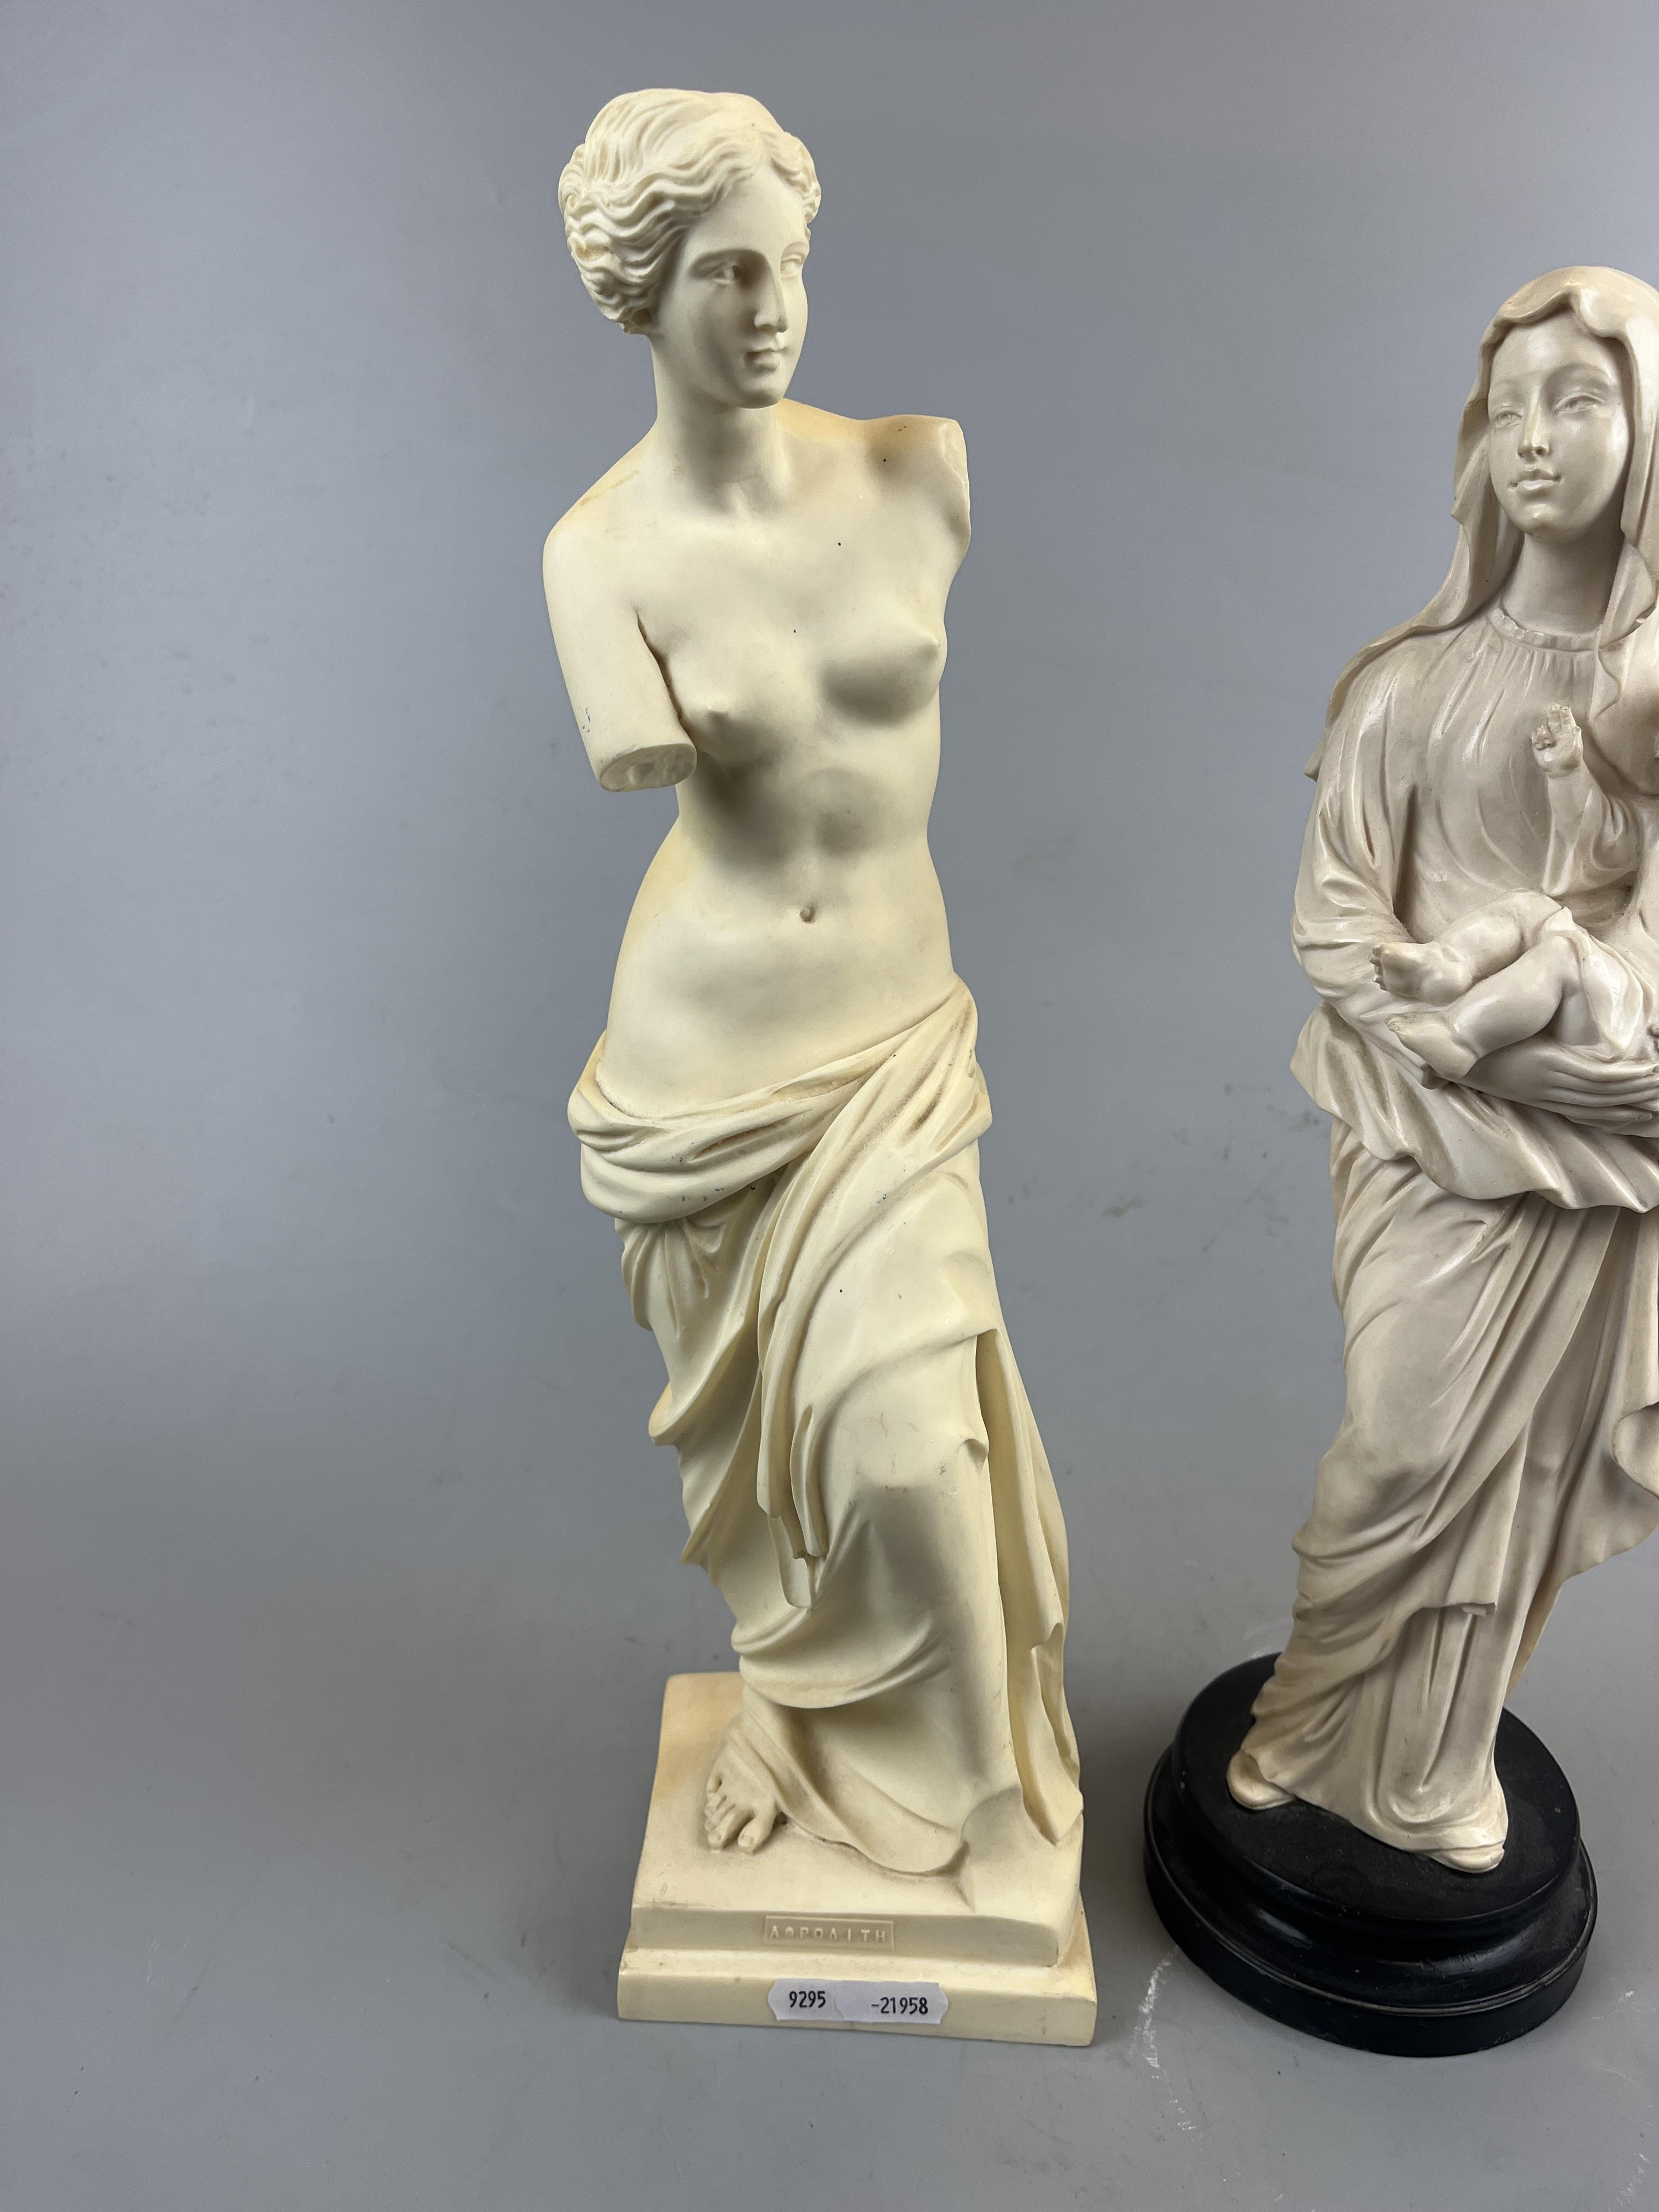 2 Virgin Marys together with a Venus de Milo figure - Image 4 of 6